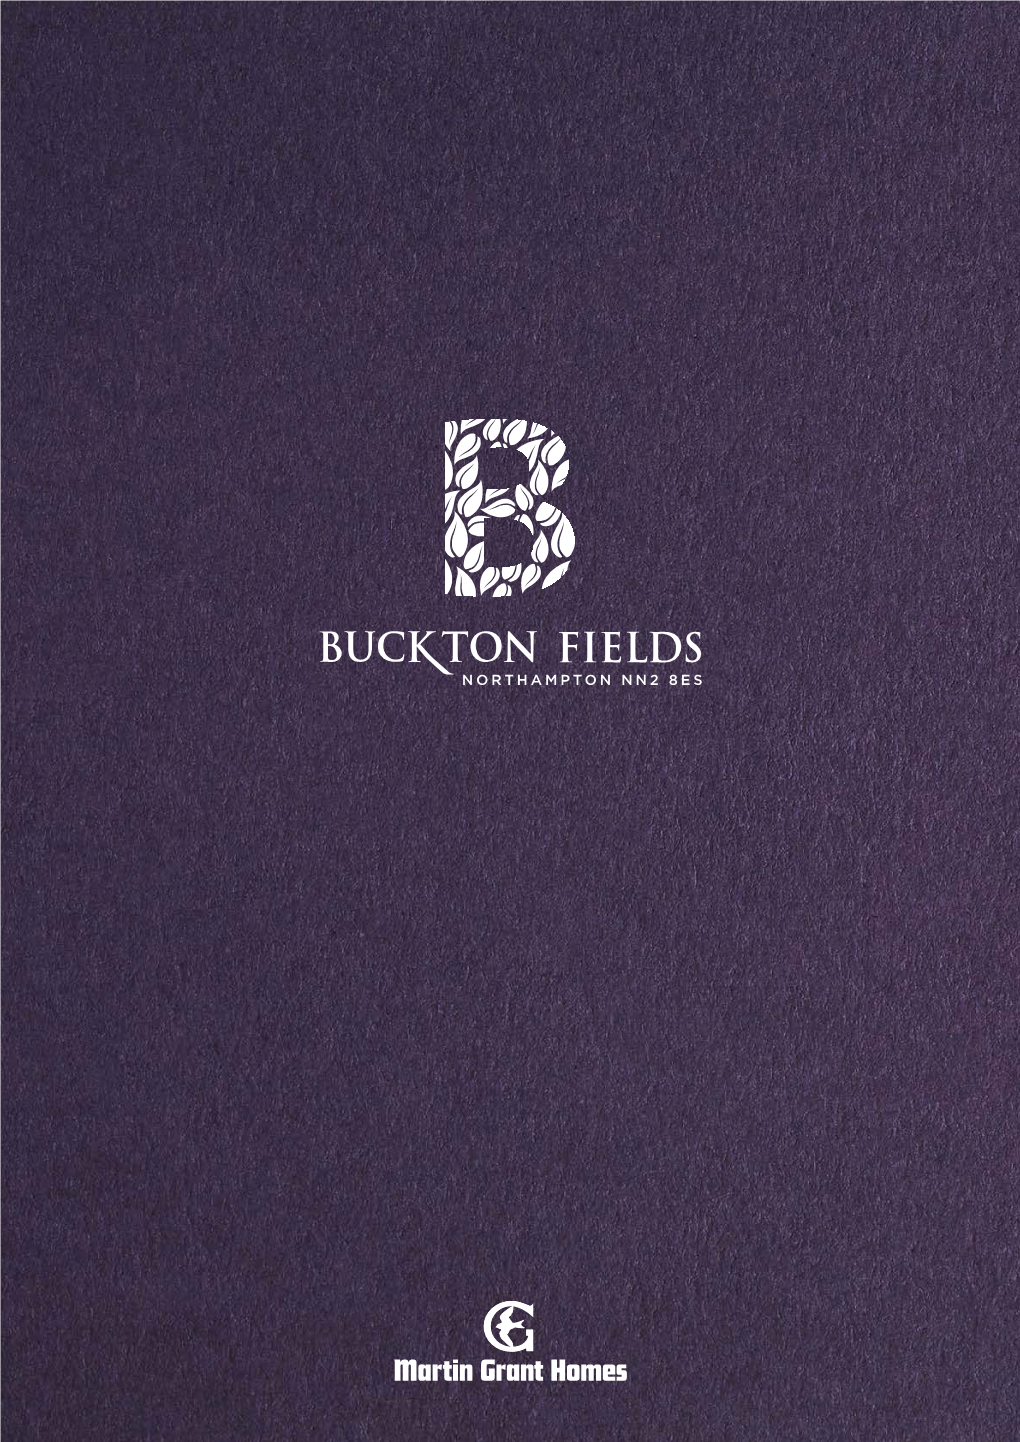 Buckton-Fields-Brochure.Pdf